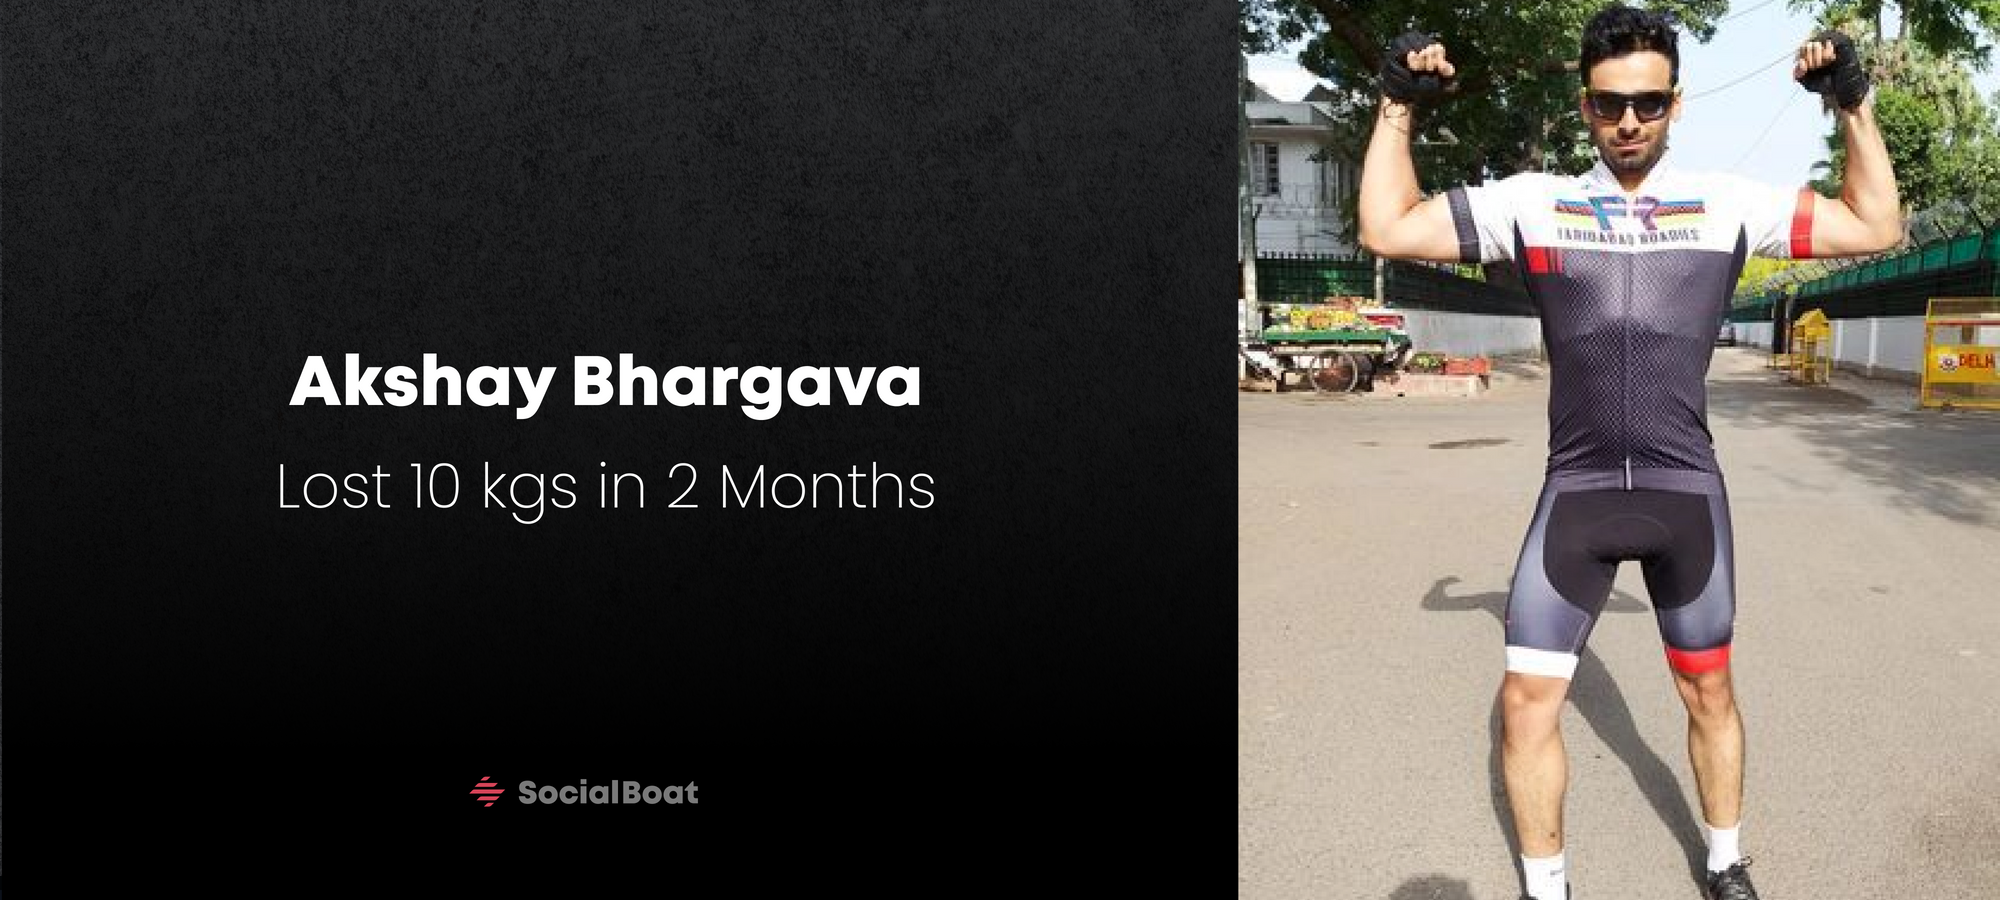 Akshay Bhargava: Lost 10 kgs in 2 Months